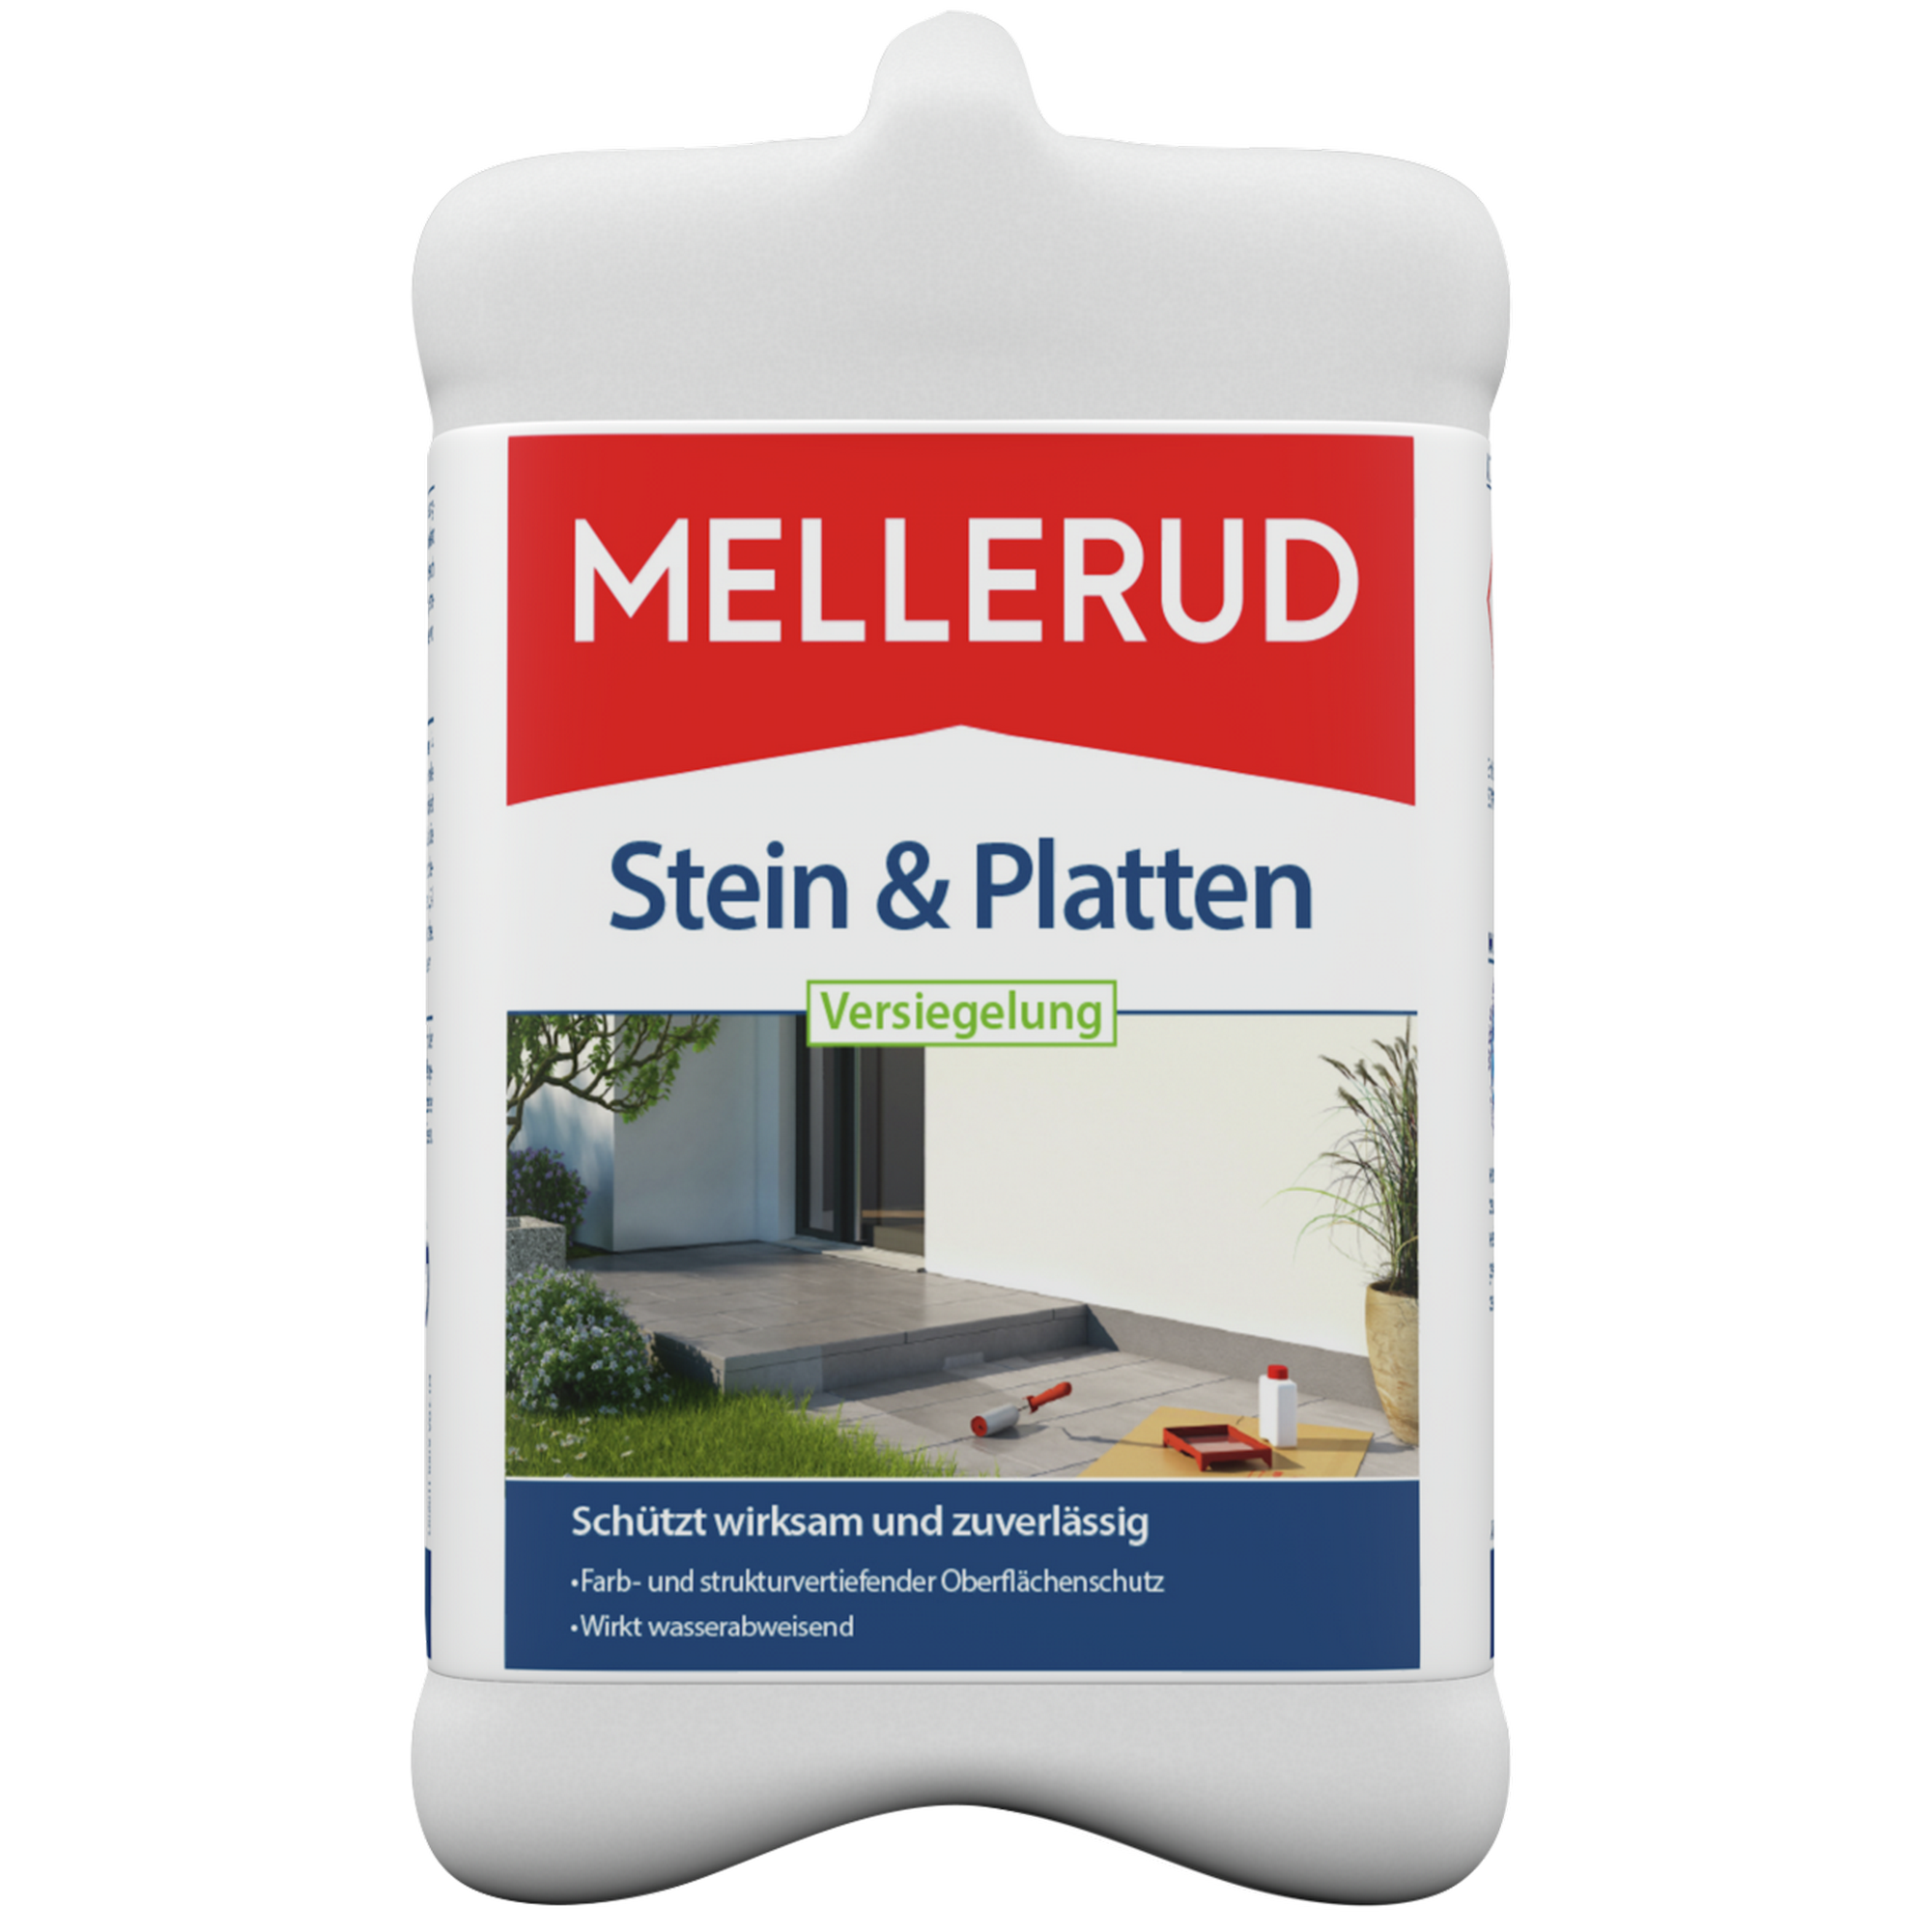 Versiegelung 'Stein & Platten' 2,5 Liter + product picture